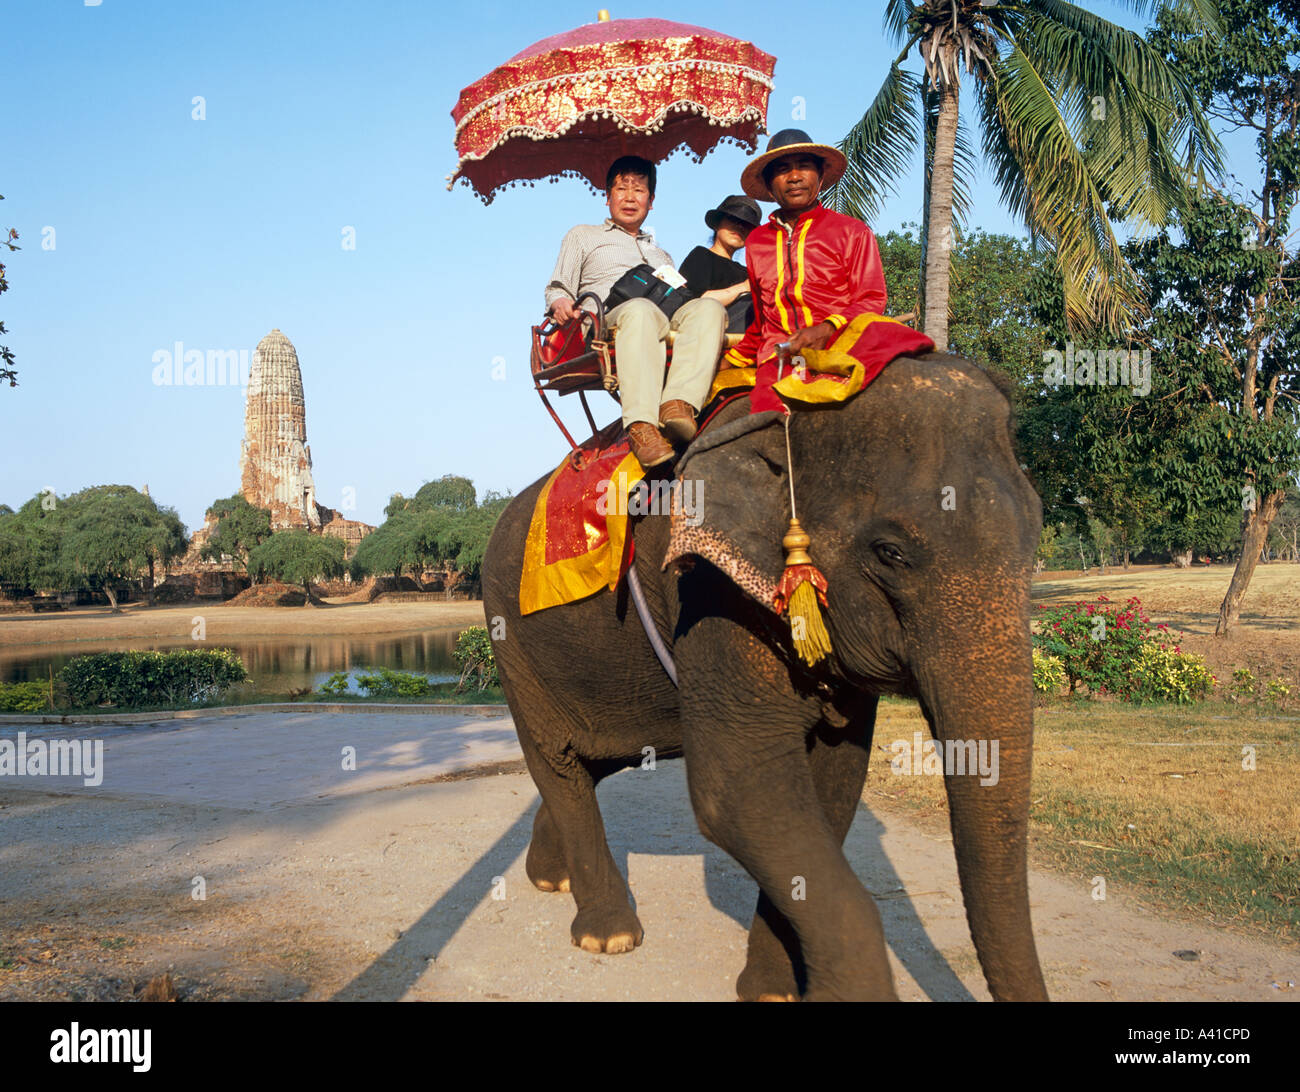 L'équitation d'éléphant dans l'ancienne capitale du Siam Ayuthaya Thaïlande Asie du sud-est Banque D'Images